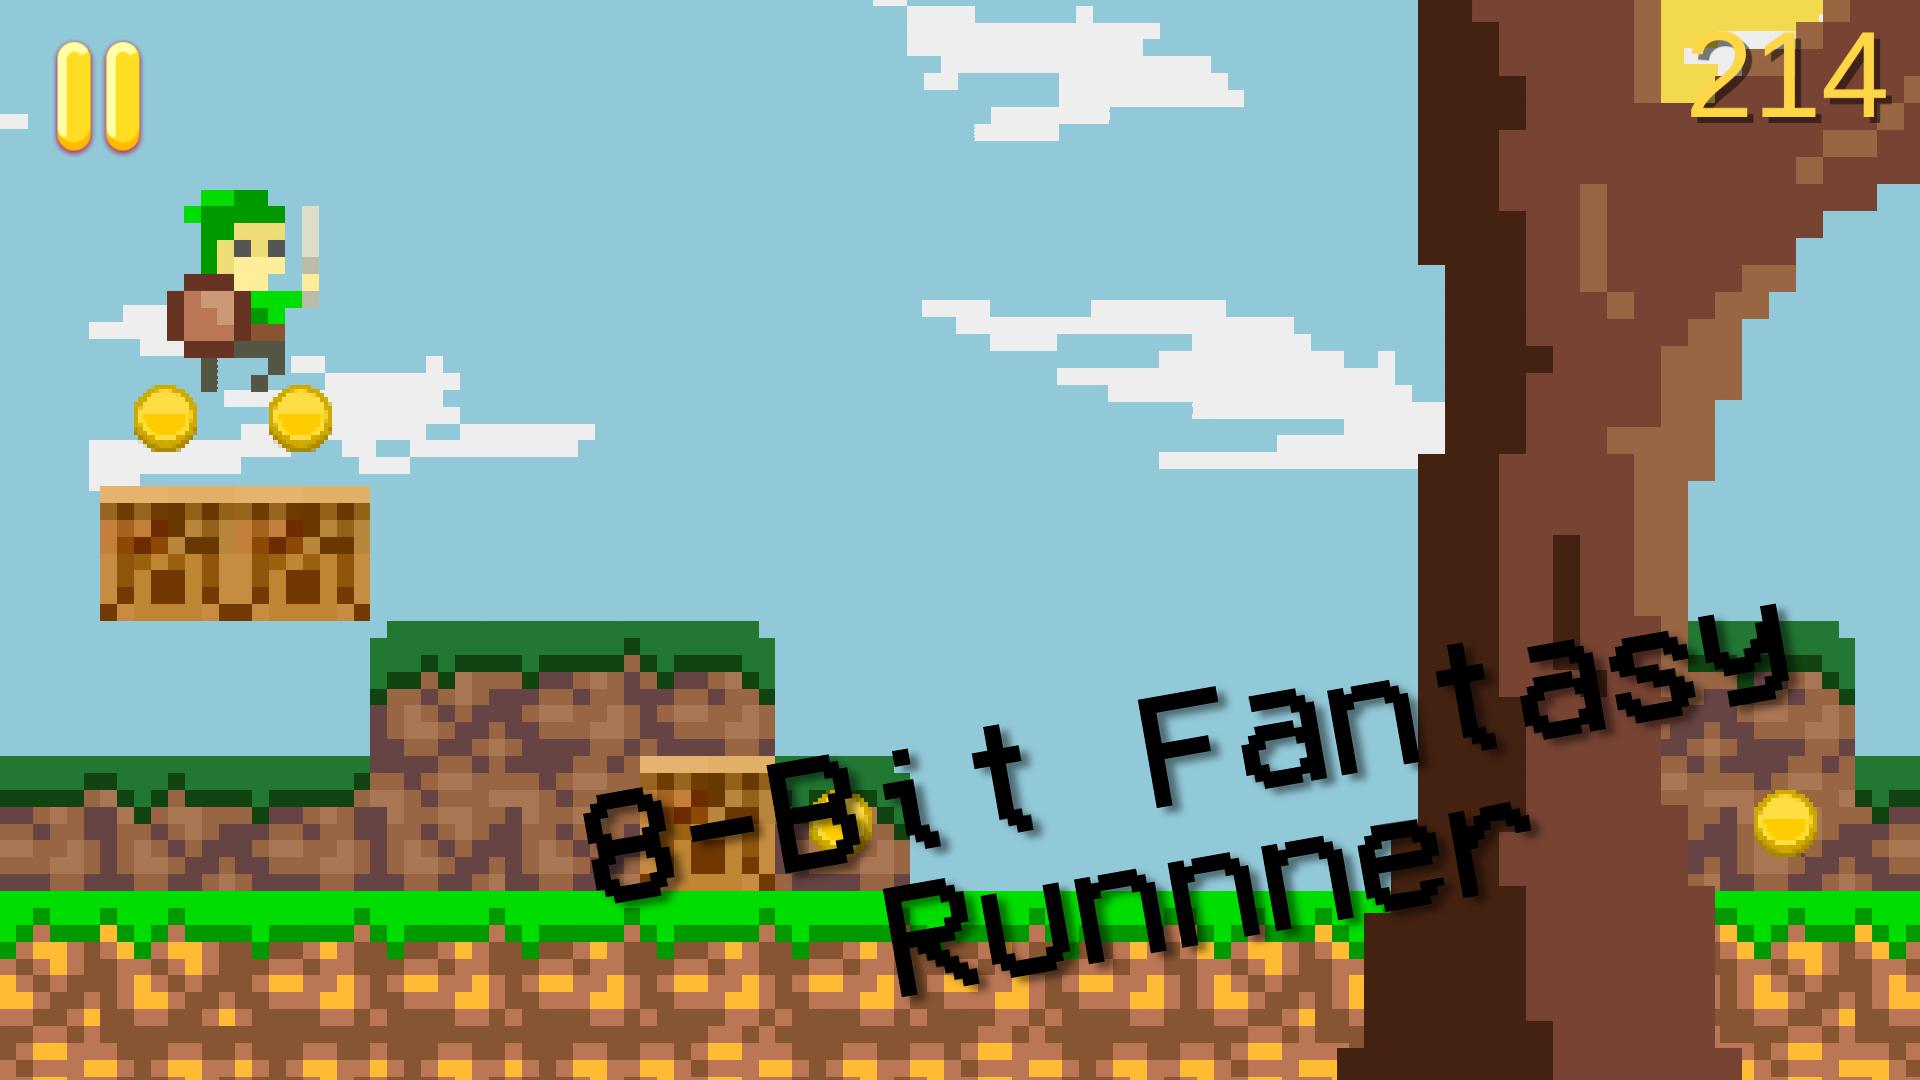 8-Bit Fantasy Runner